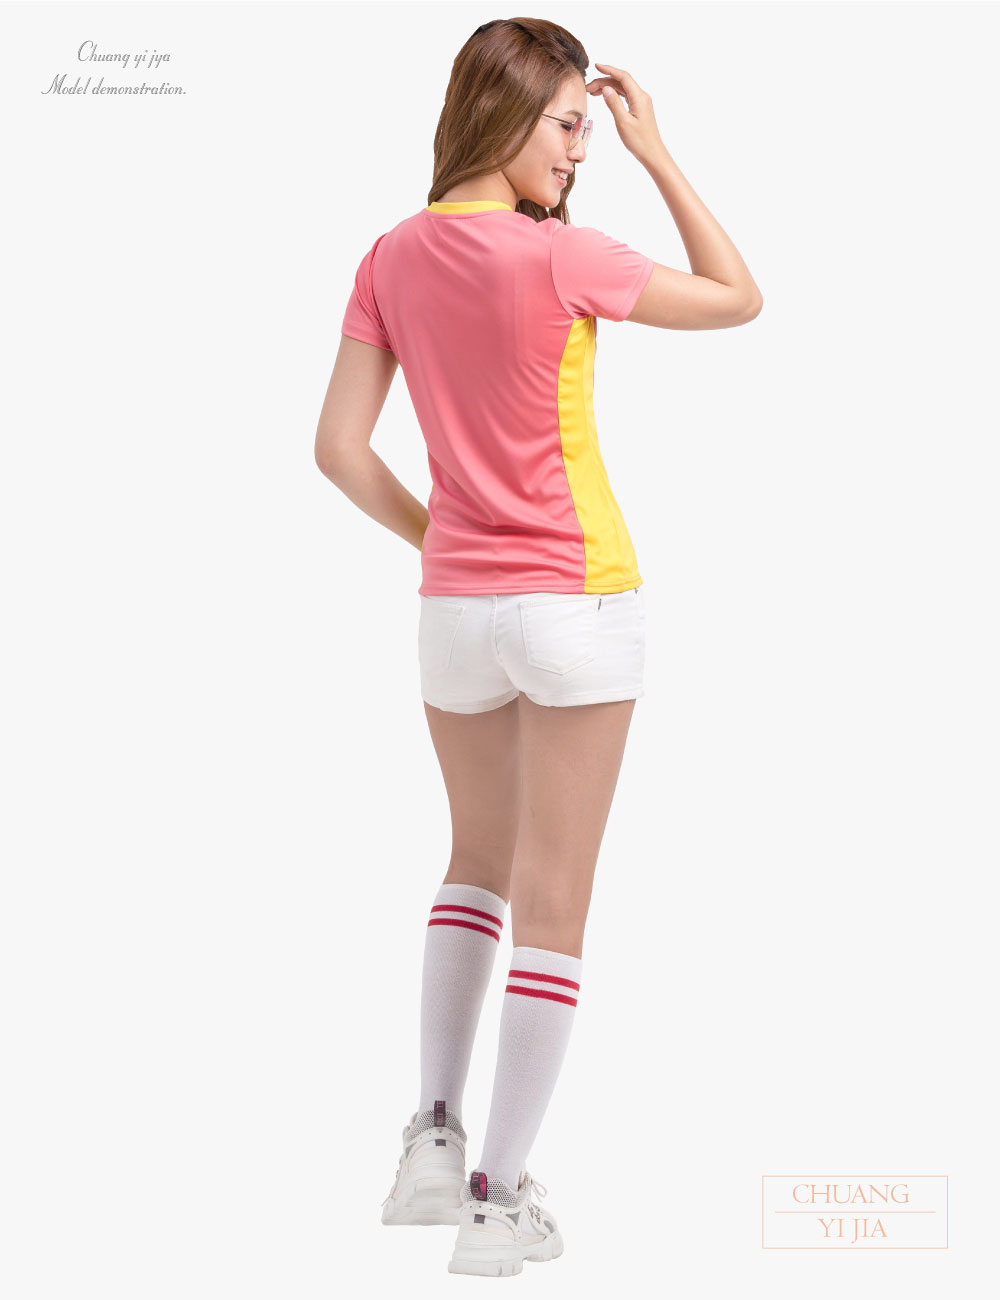 客製化T恤運動腰身接片-粉桔黃-創e家團體服